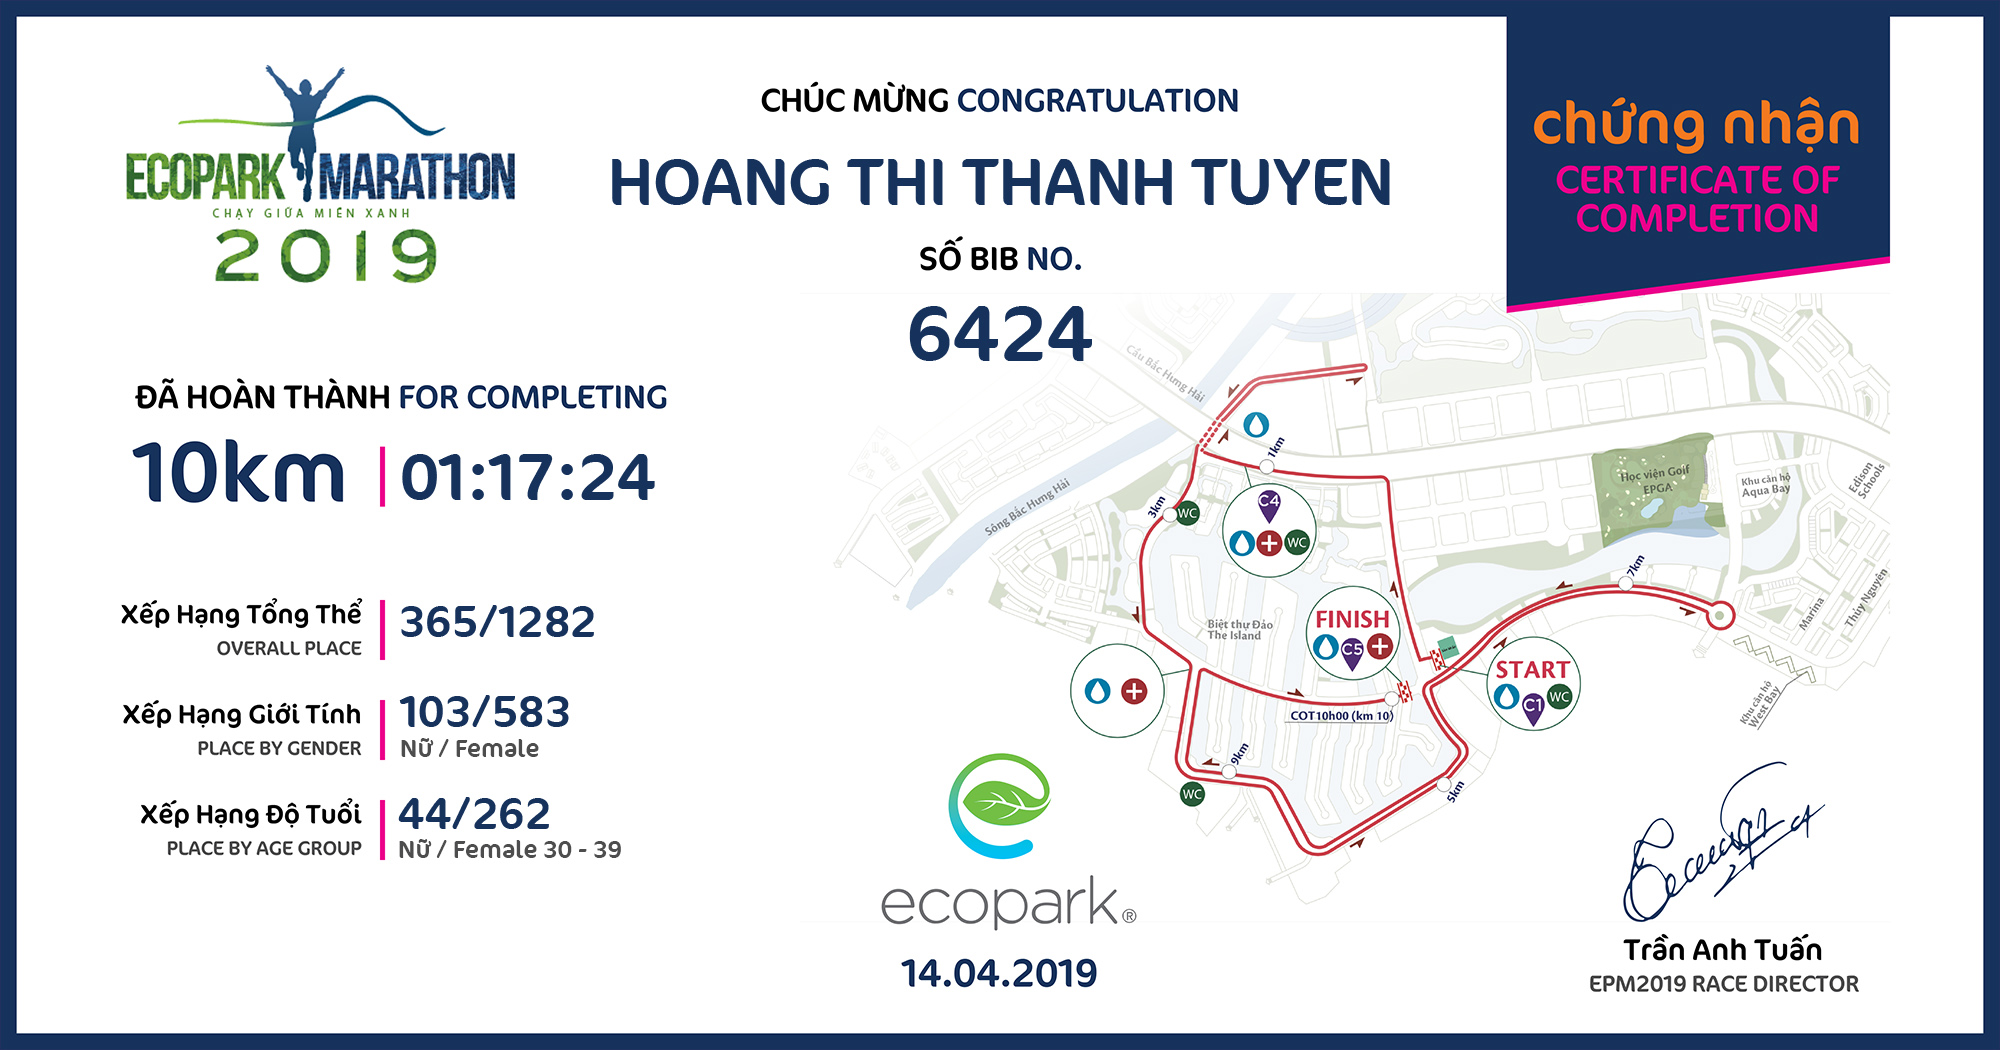 6424 - Hoang Thi Thanh Tuyen